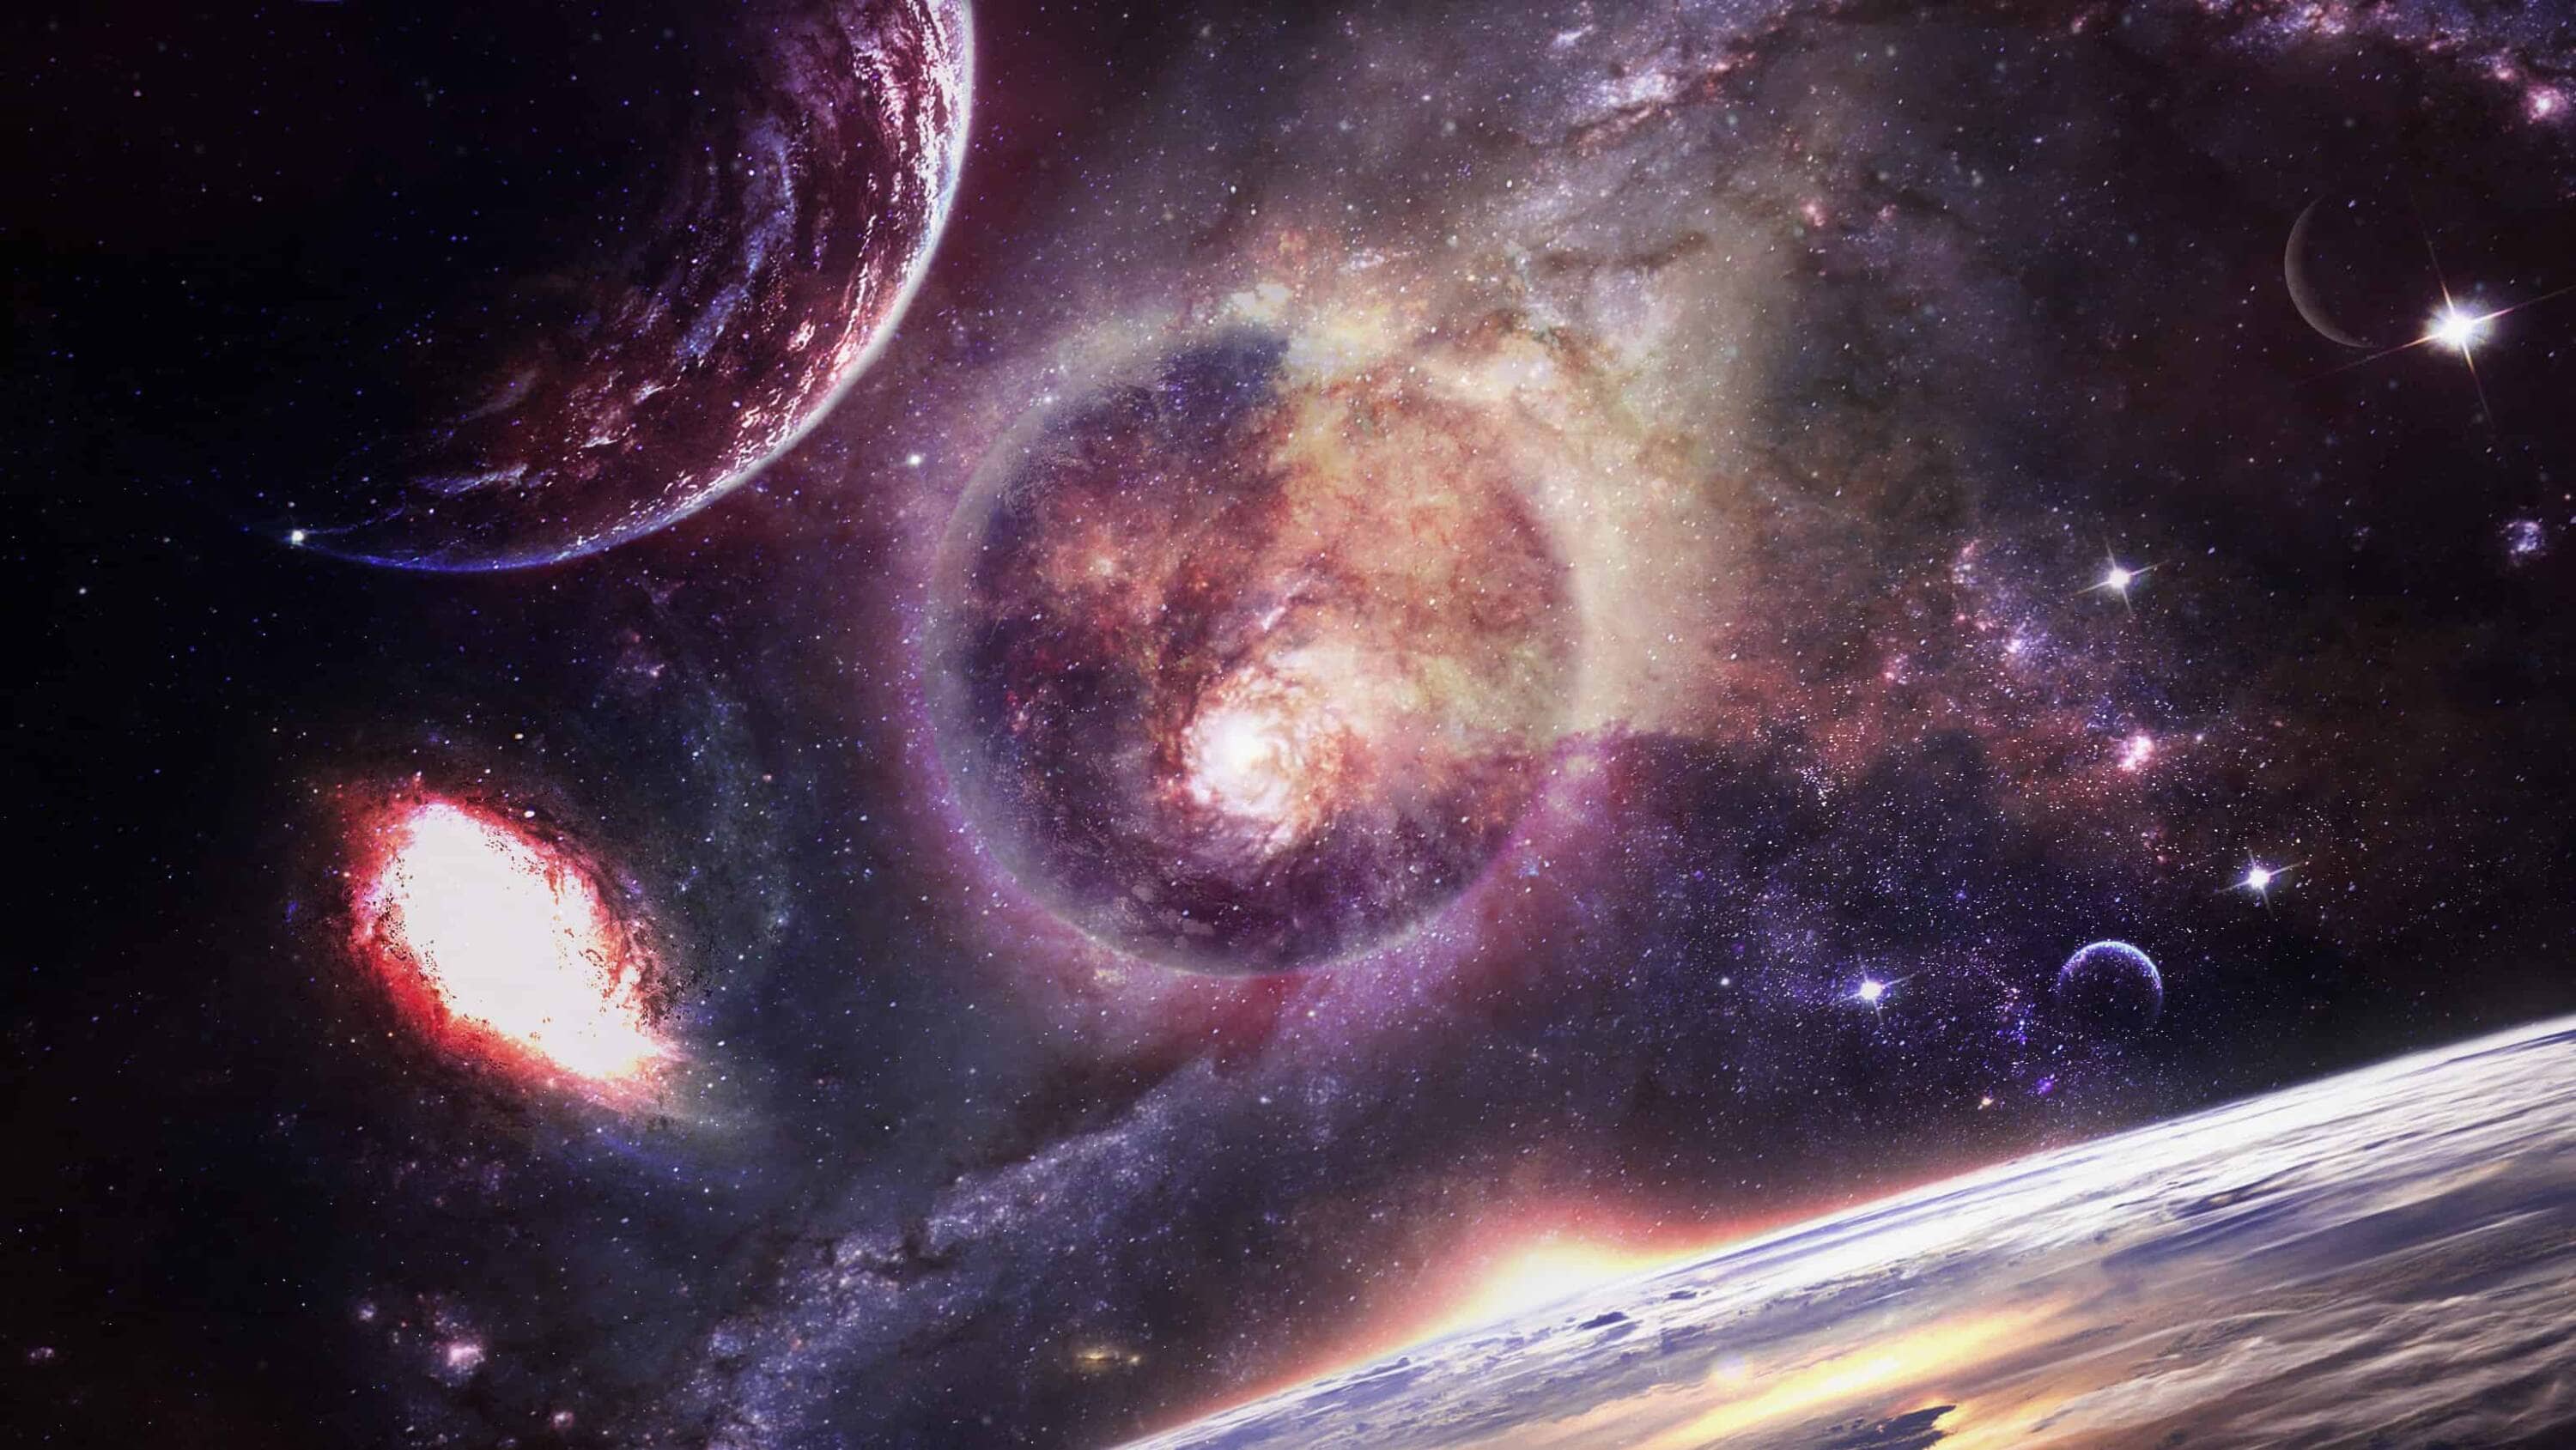 Galaxy Apocalypse: Trải nghiệm không gian tuyệt đẹp với bức tranh đầy ngọn lửa này. Tận dụng mọi giây phút để chứng kiến ​​những tưởng tượng tuyệt vời của người nghệ sĩ. Hãy sẵn sàng cho một cuộc hành trình kỳ thú vào thế giới tuyệt đẹp nhất trong vũ trụ.